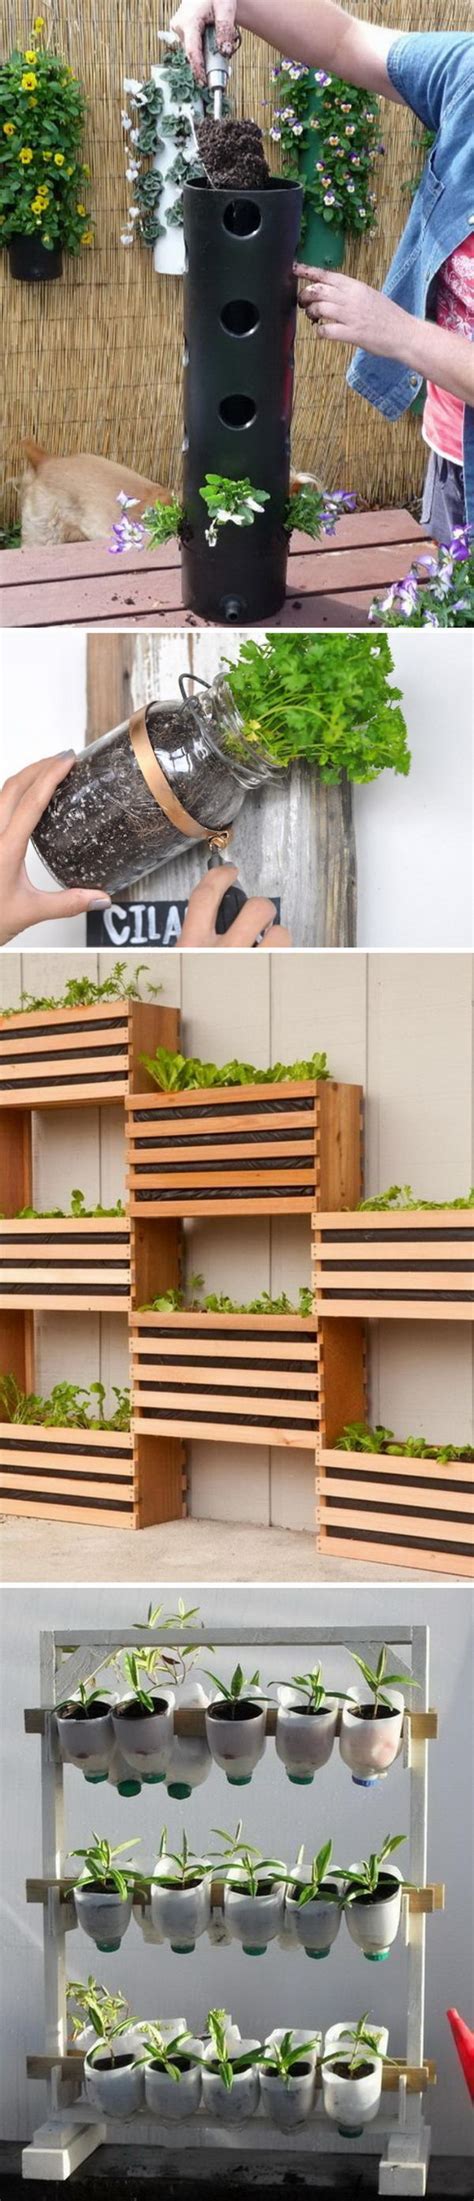 35 Awesome Vertical Garden Ideas 2017